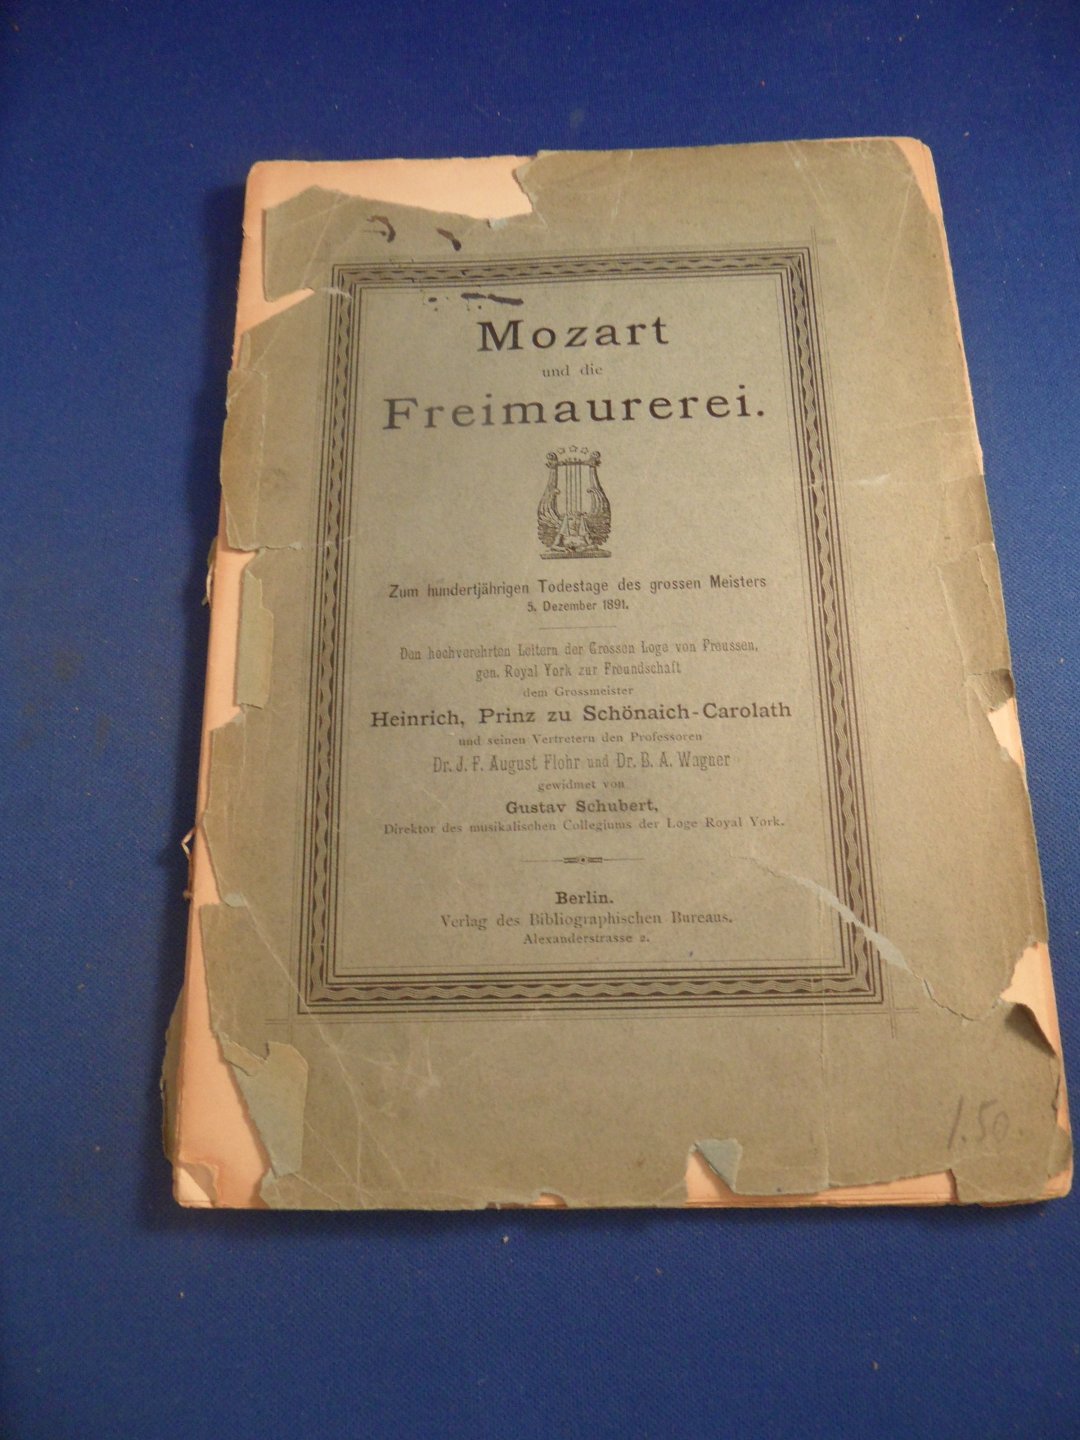 Schubert, Gustav - Mozart und die Freimaurerei, zum hunderjähringen Todestage des grossen Meisters